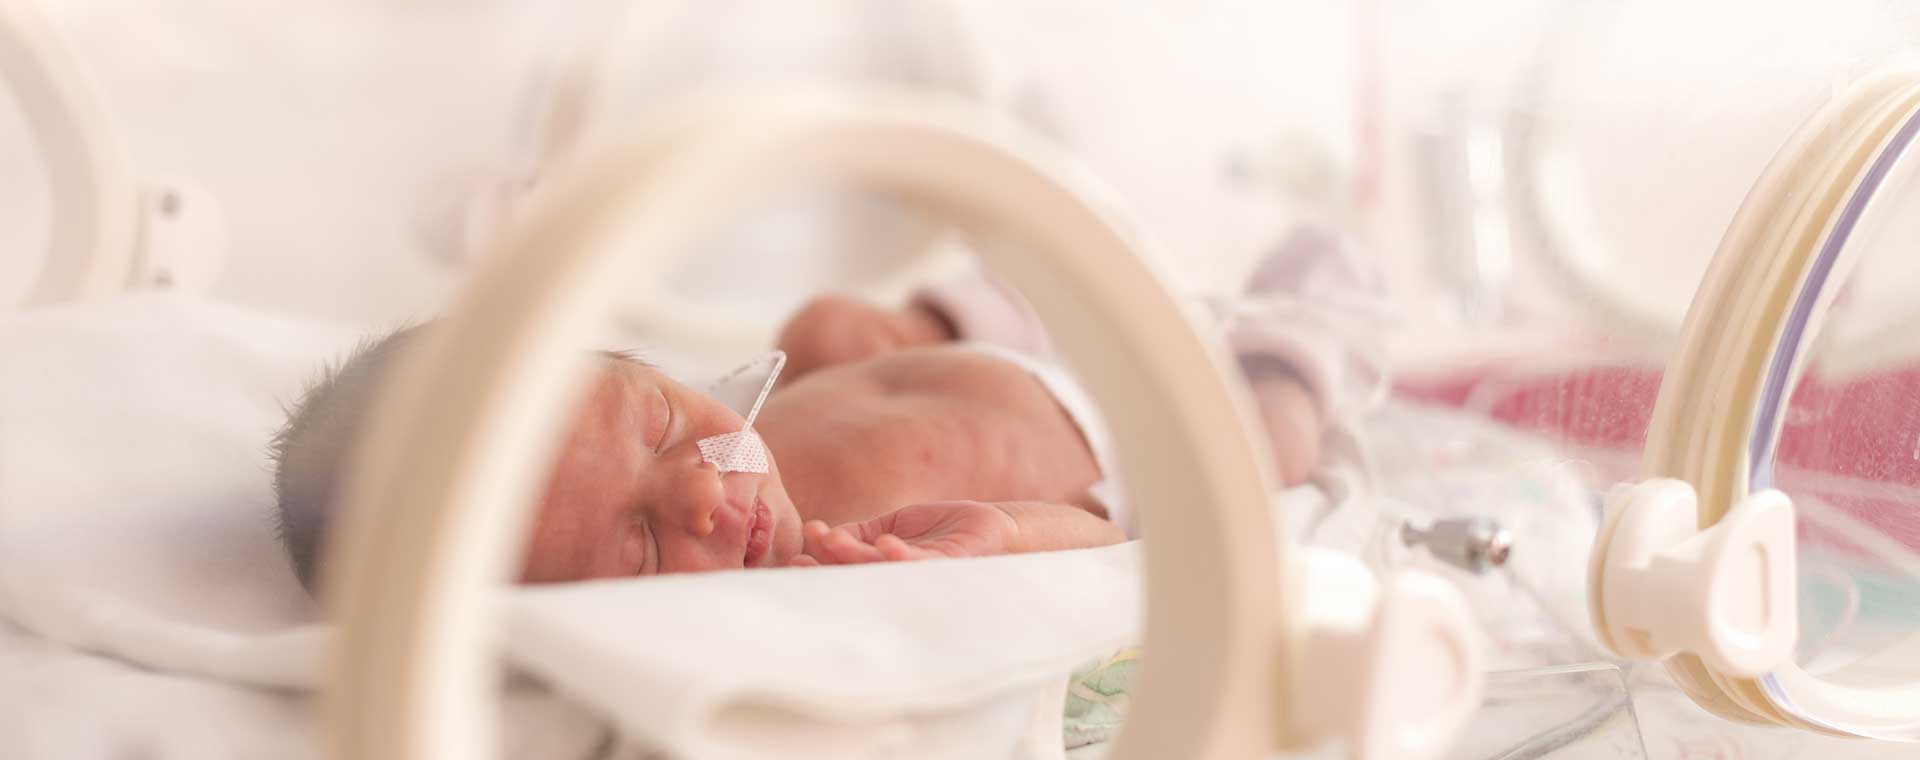 Naître prématuré augmente le risque de développer des troubles neurologiques ou comportementaux